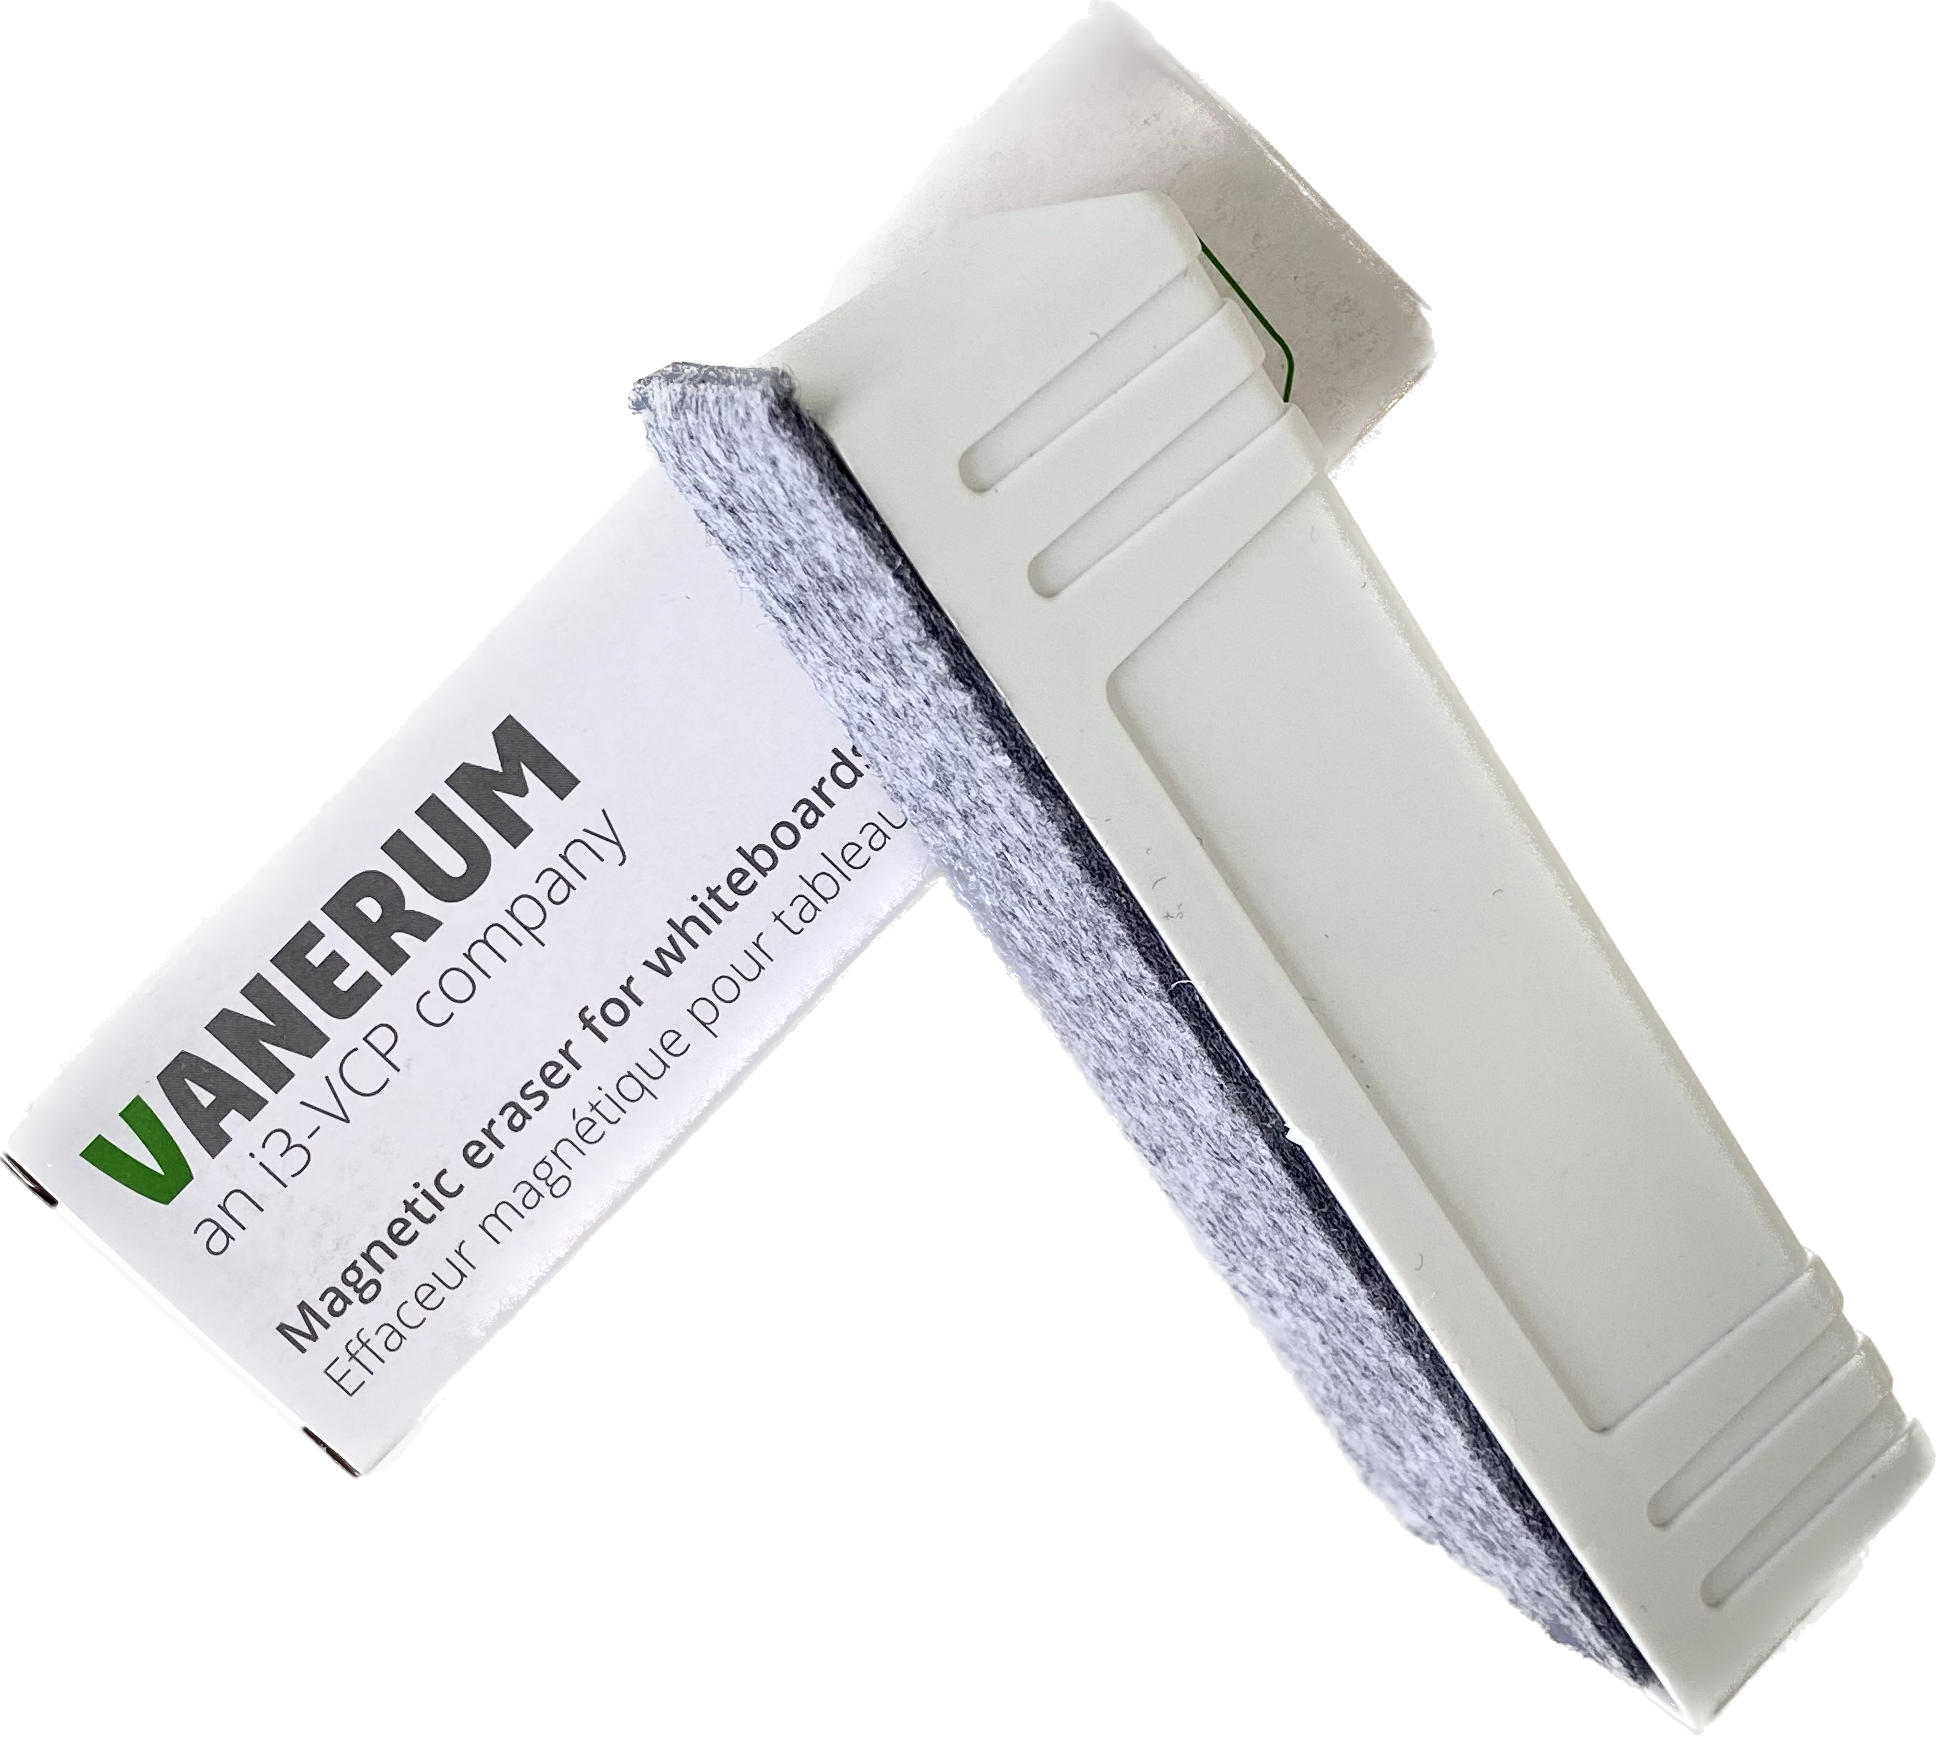 Vanerum Basic+ Tableau 130 x 200 cm - émail blanc feutre